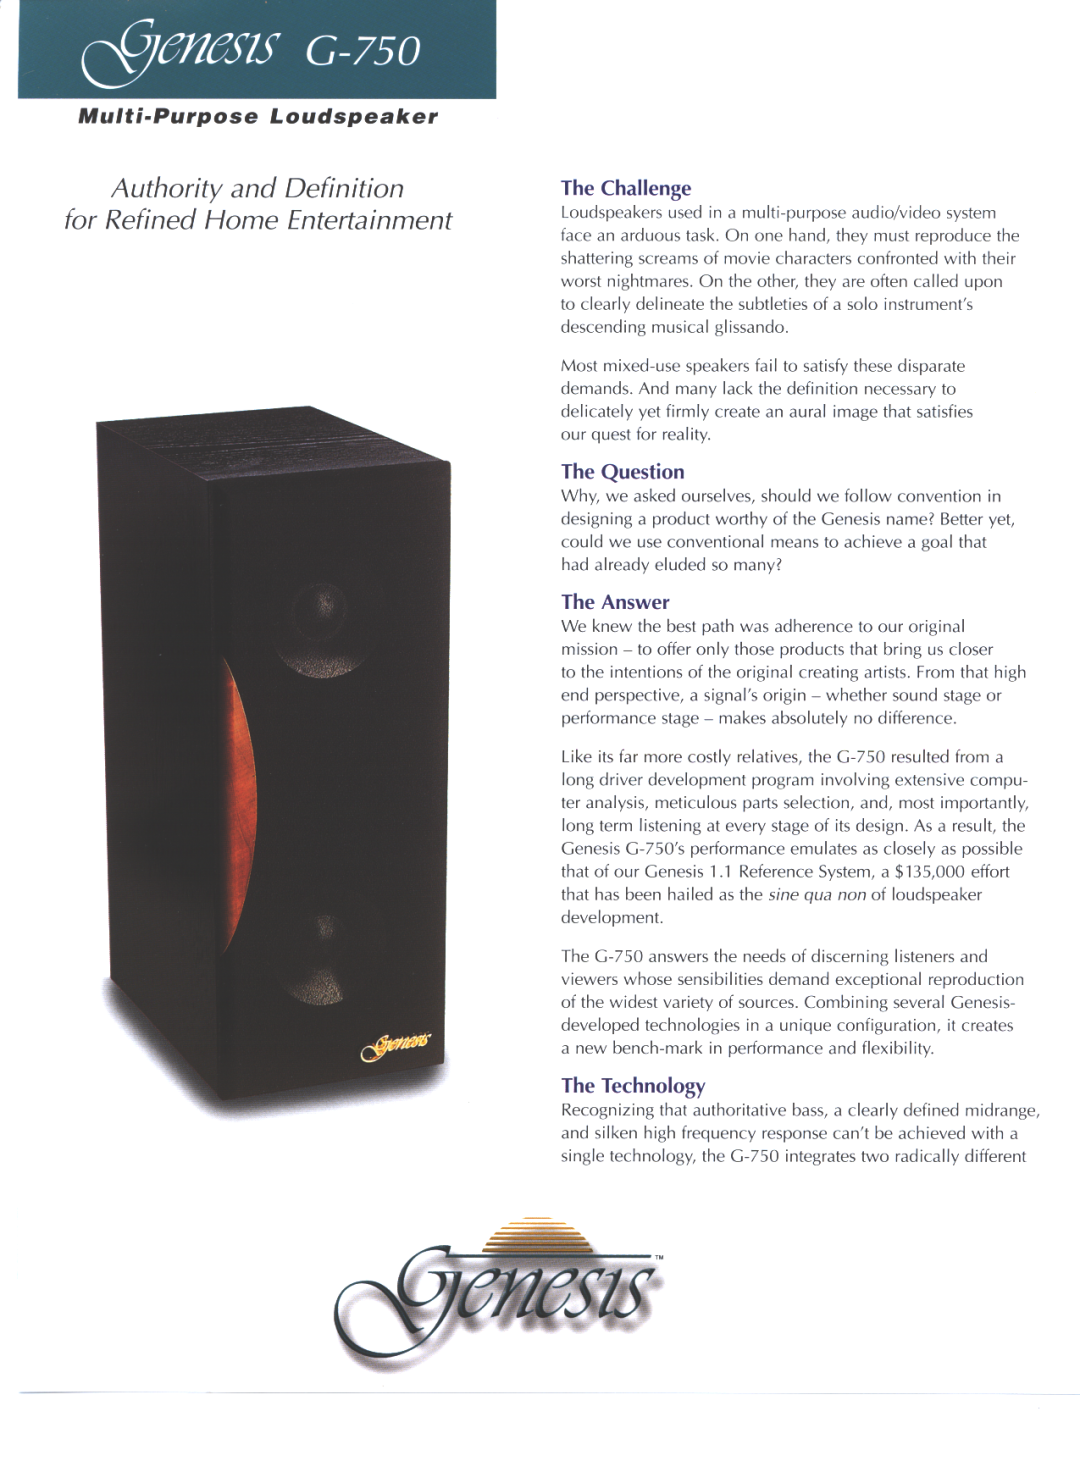 Genesis Advanced Technologies Gen 750 manual 